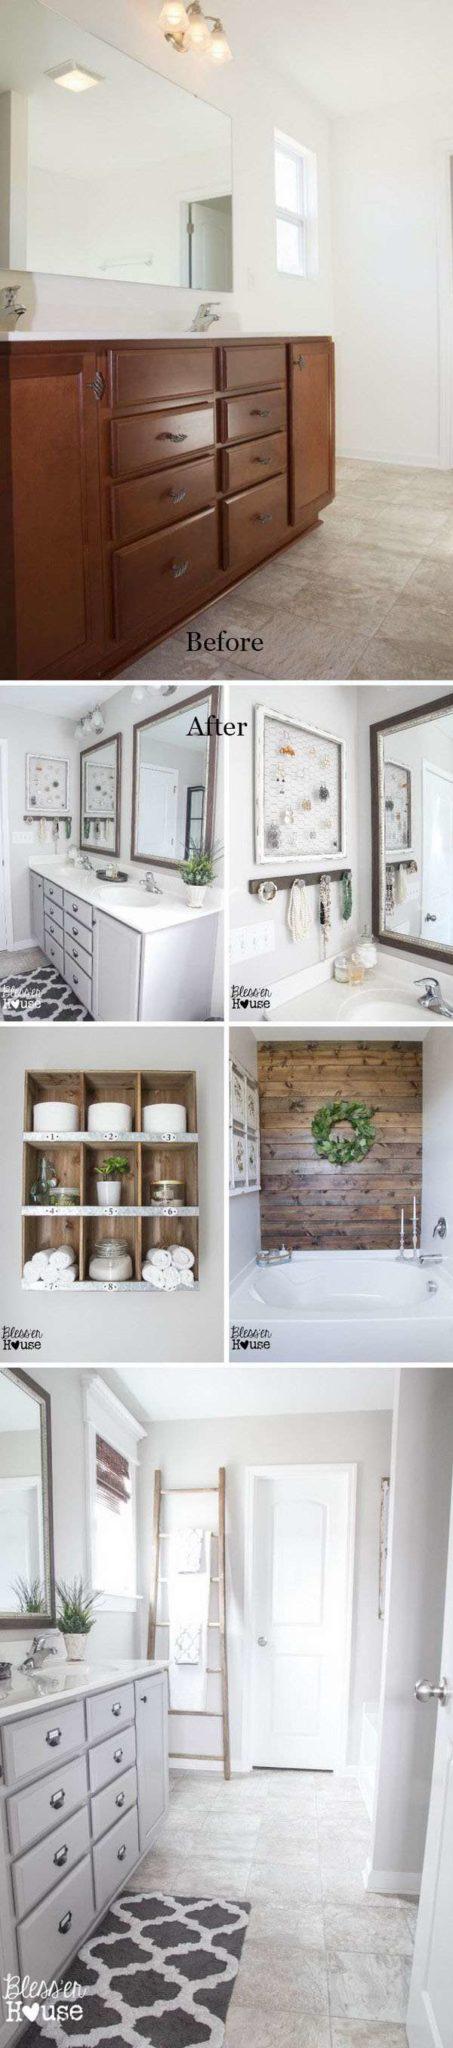 16 идей преображения старой ванной комнаты 10 | Дока-Мастер